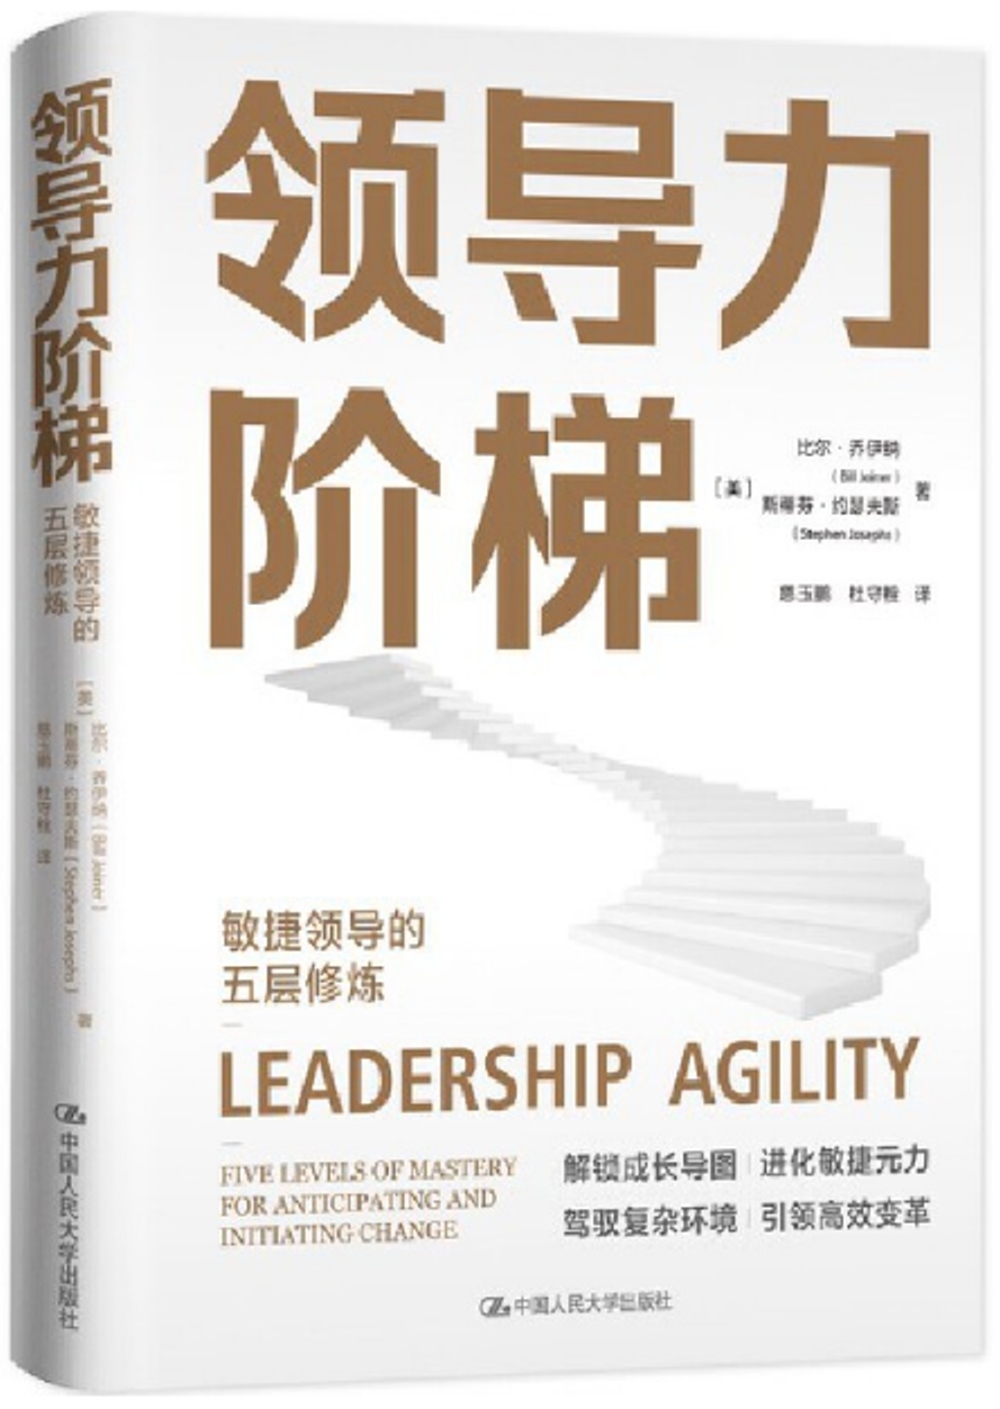 領導力階梯：敏捷領導的五層修煉